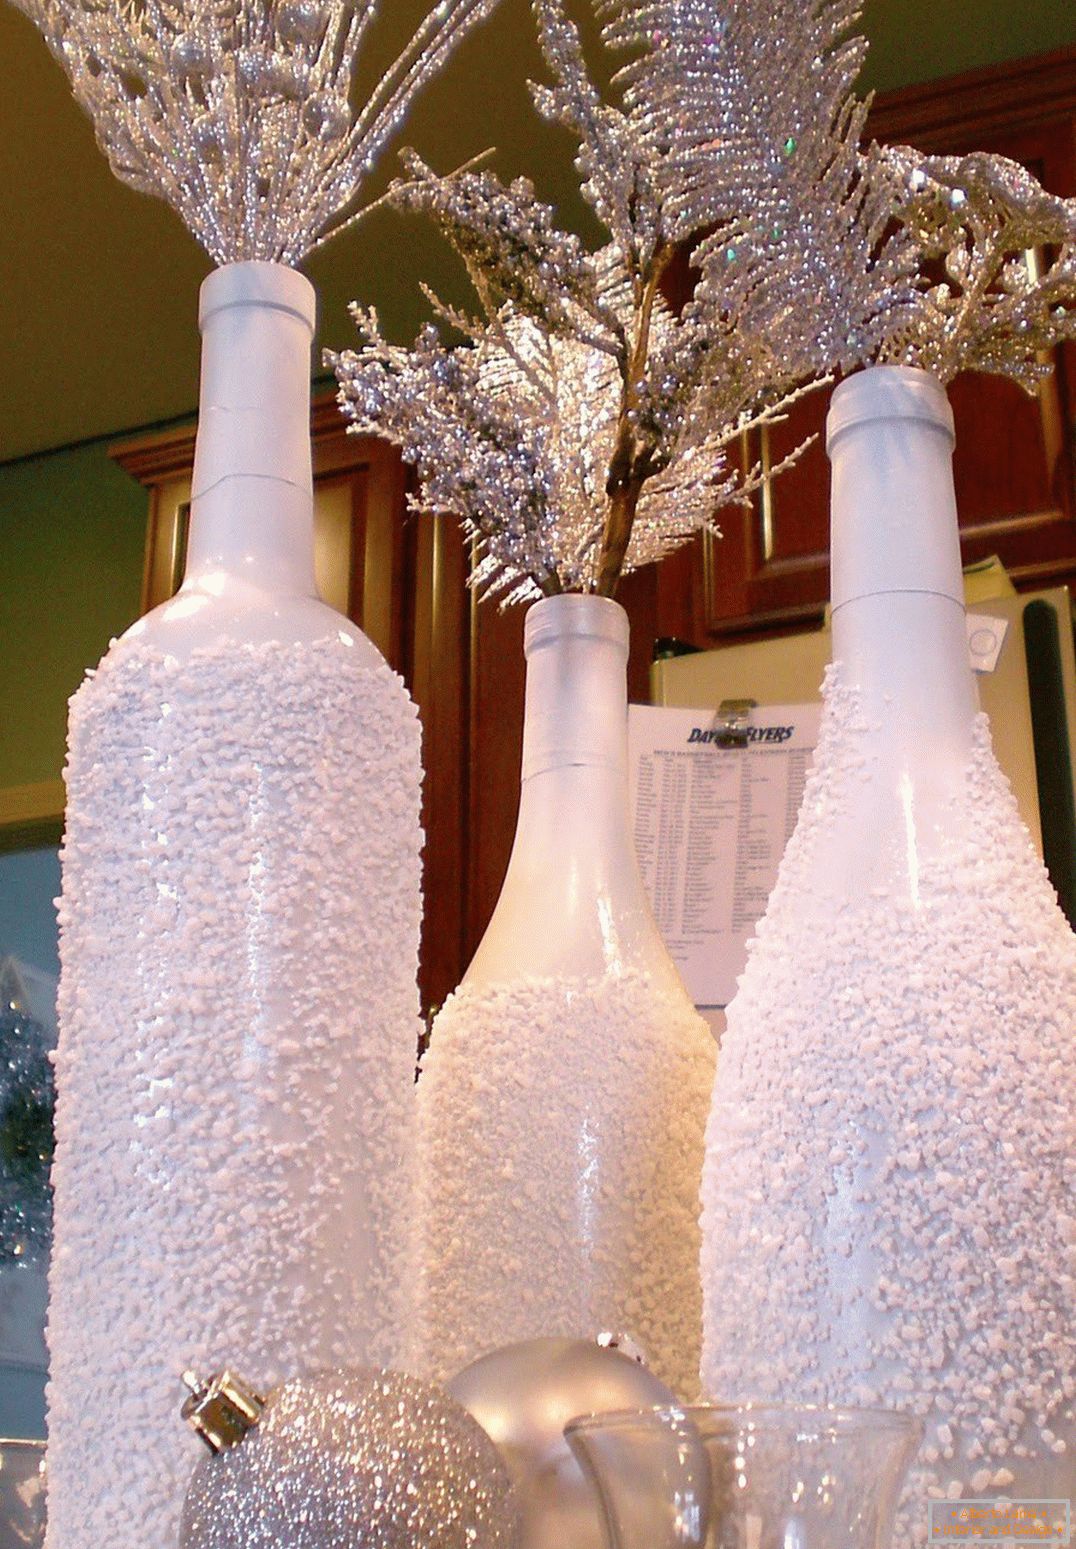 Décoration de Noël de bouteilles